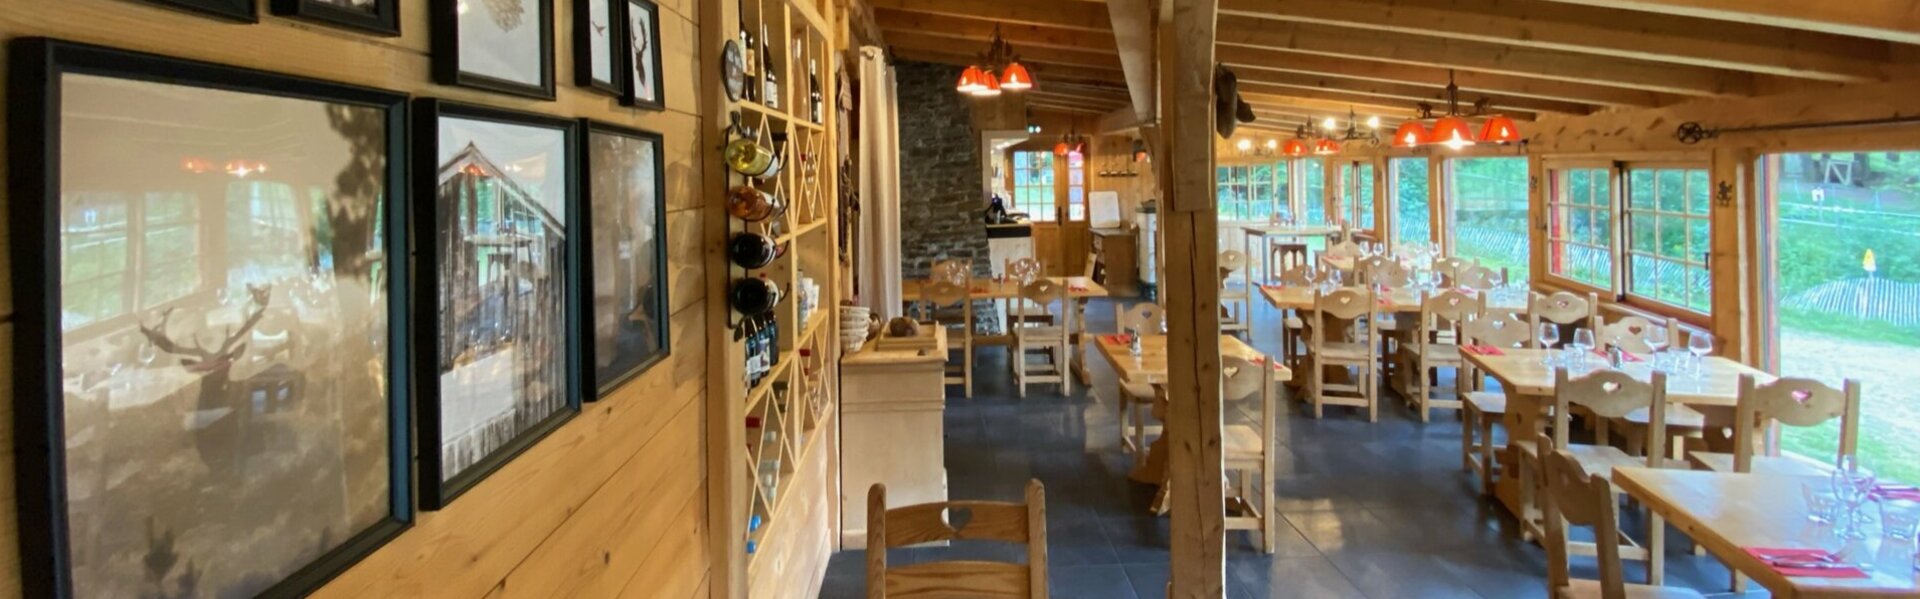 Le Bufadou, restaurant Lioran - Cantal Auvergne